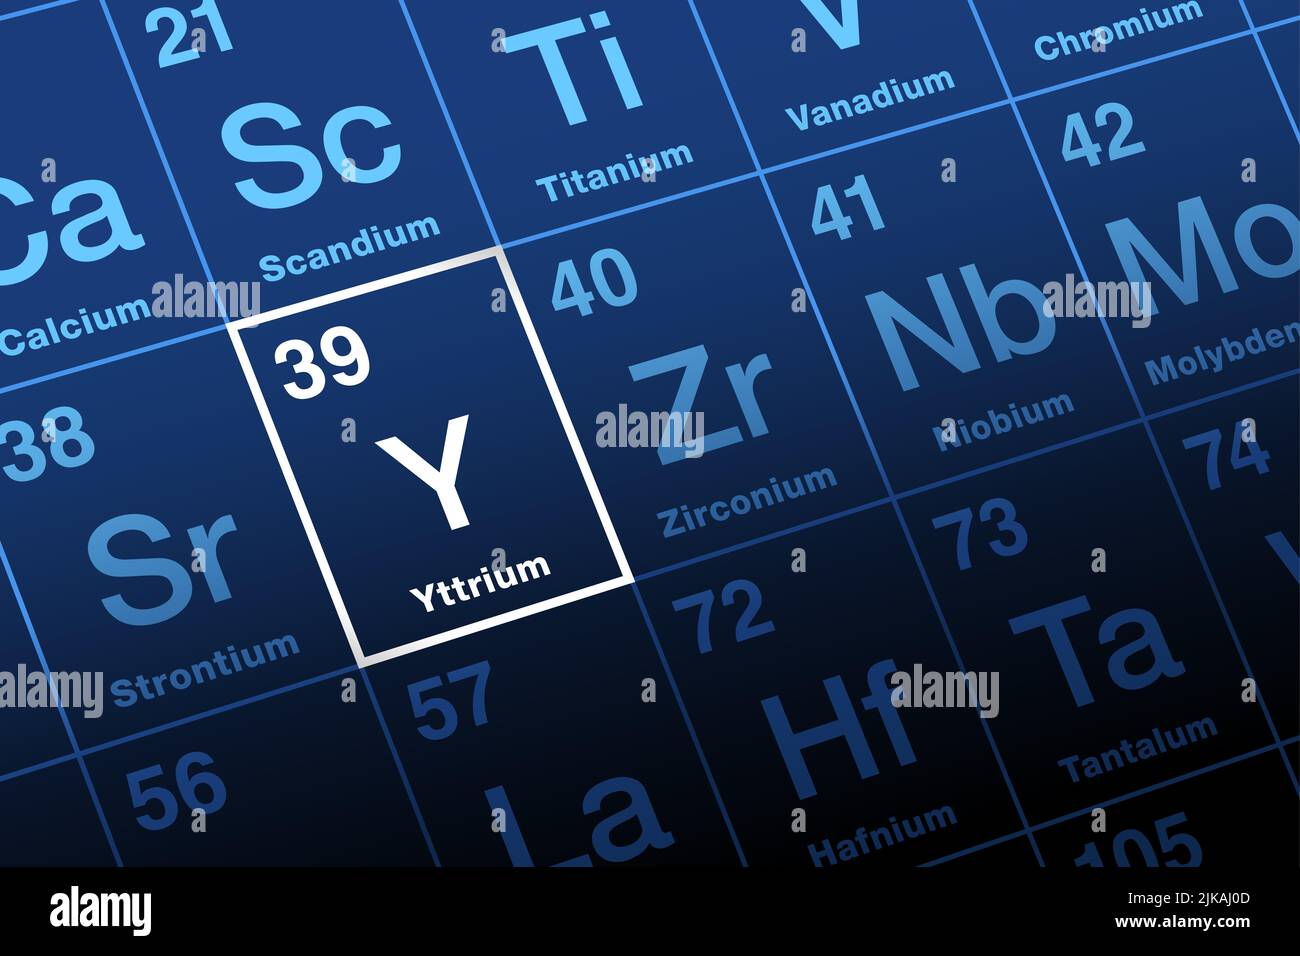 Yttrium im Periodensystem. Übergangsmetall und Seltene Erden-Element, mit dem Symbol Y, aus dem Mineral Ytterbite, das erstmals in Ytterby, Schweden, identifiziert wurde. Stockfoto